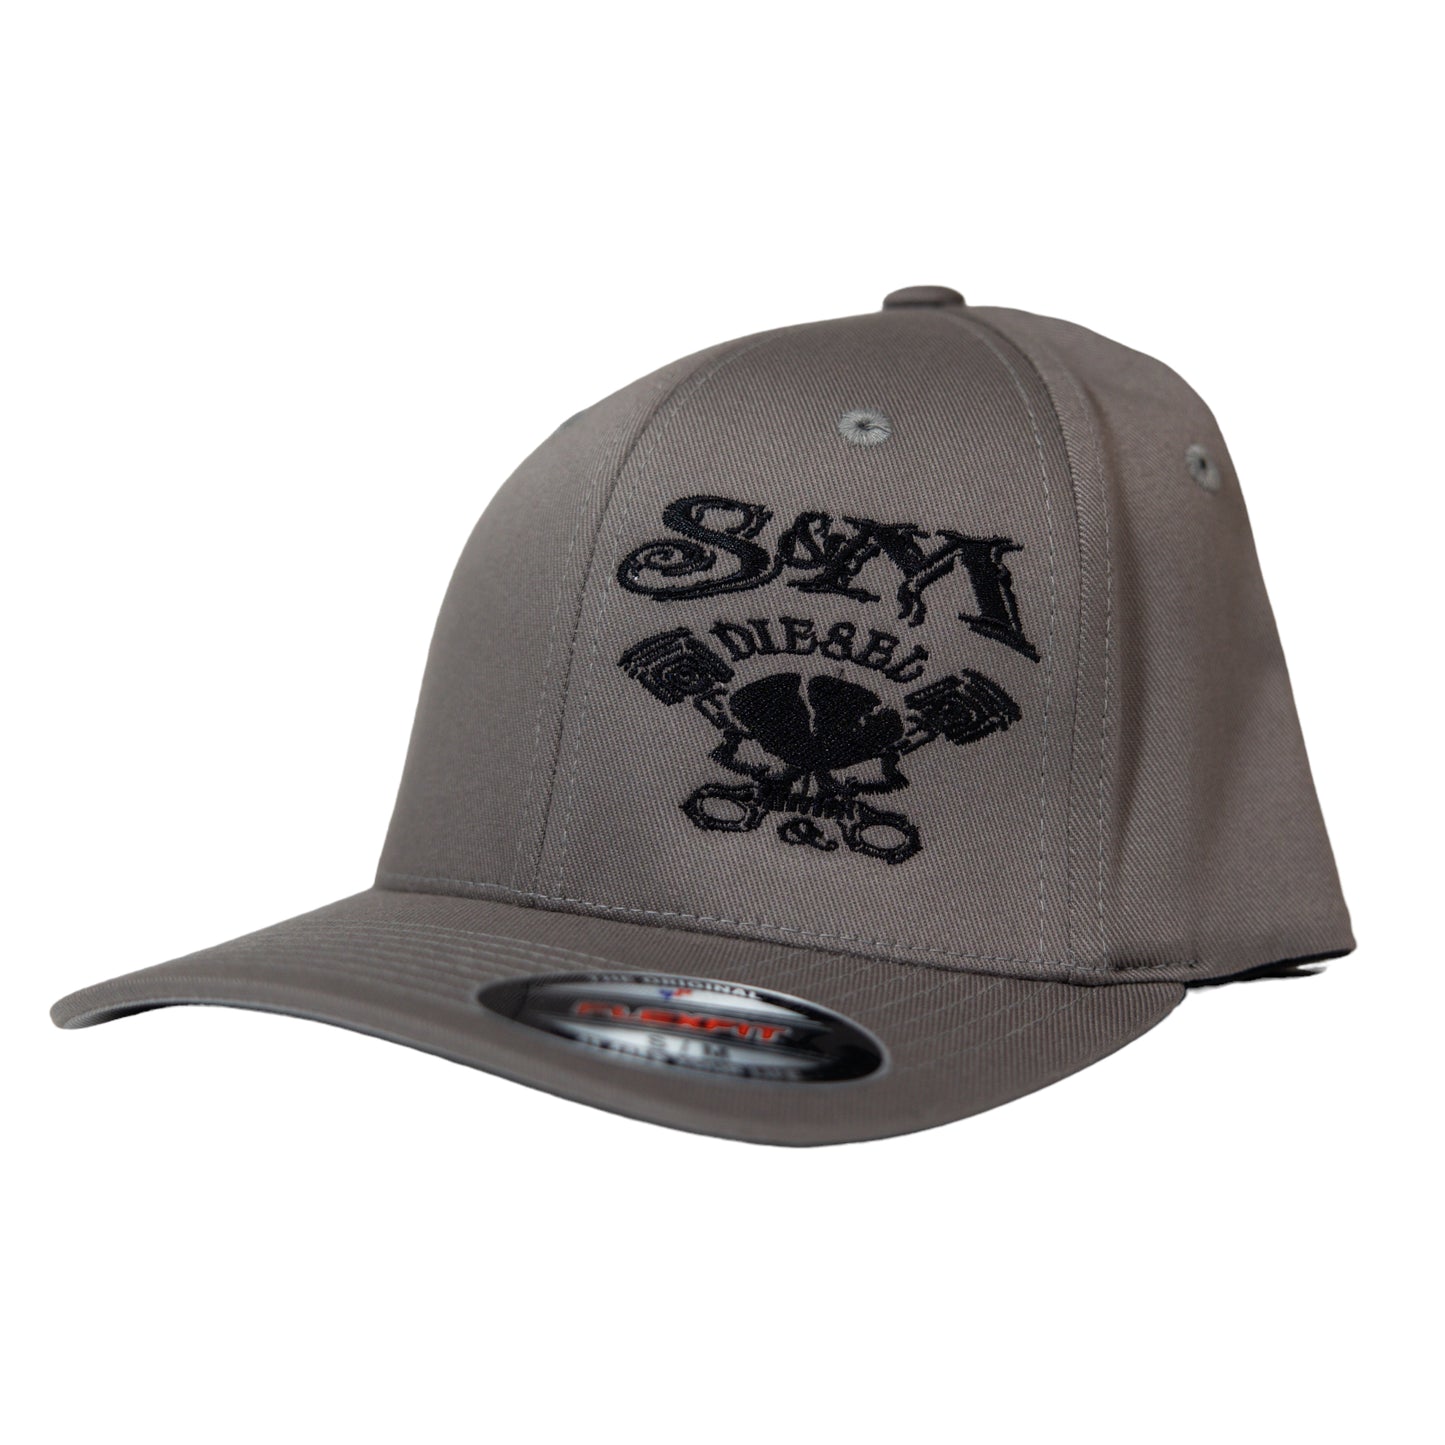 S&M Diesel flex-fit hat- 8 colors avail